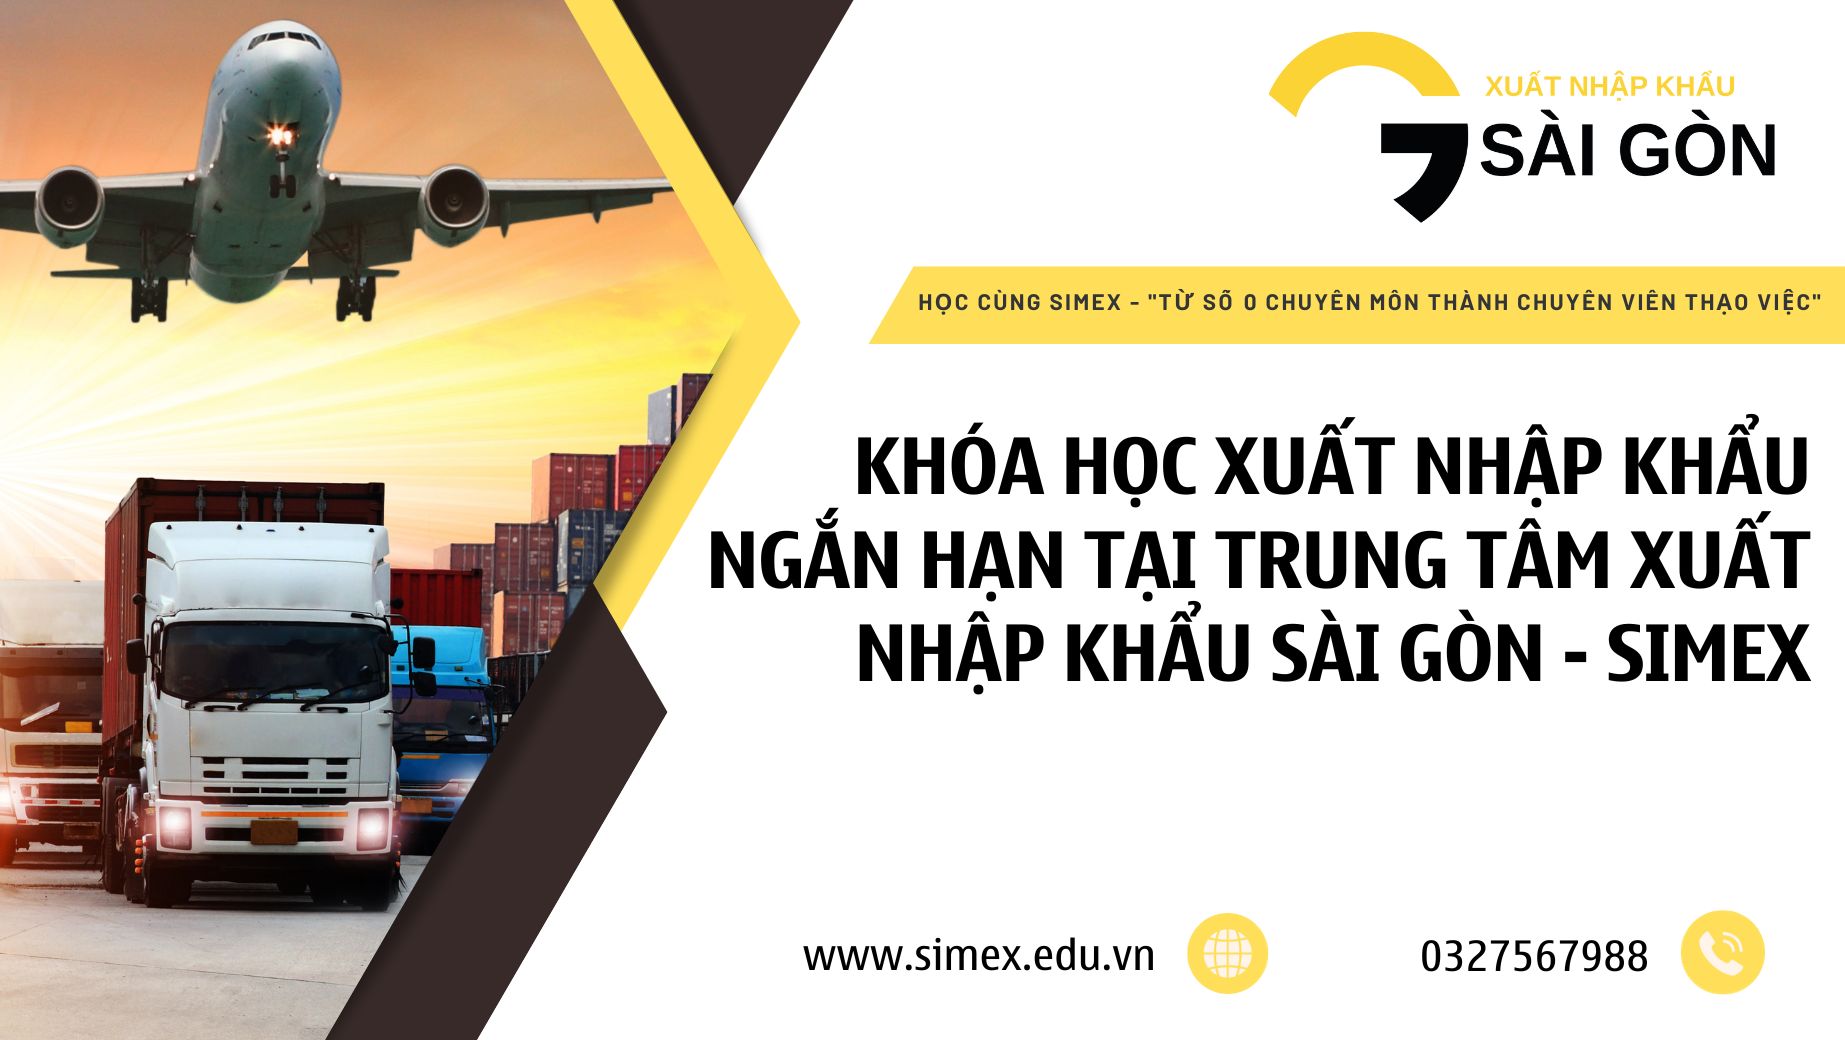 Khóa học xuất nhập khẩu ngắn hạn tại Trung tâm xuất nhập khẩu Sài Gòn - Simex